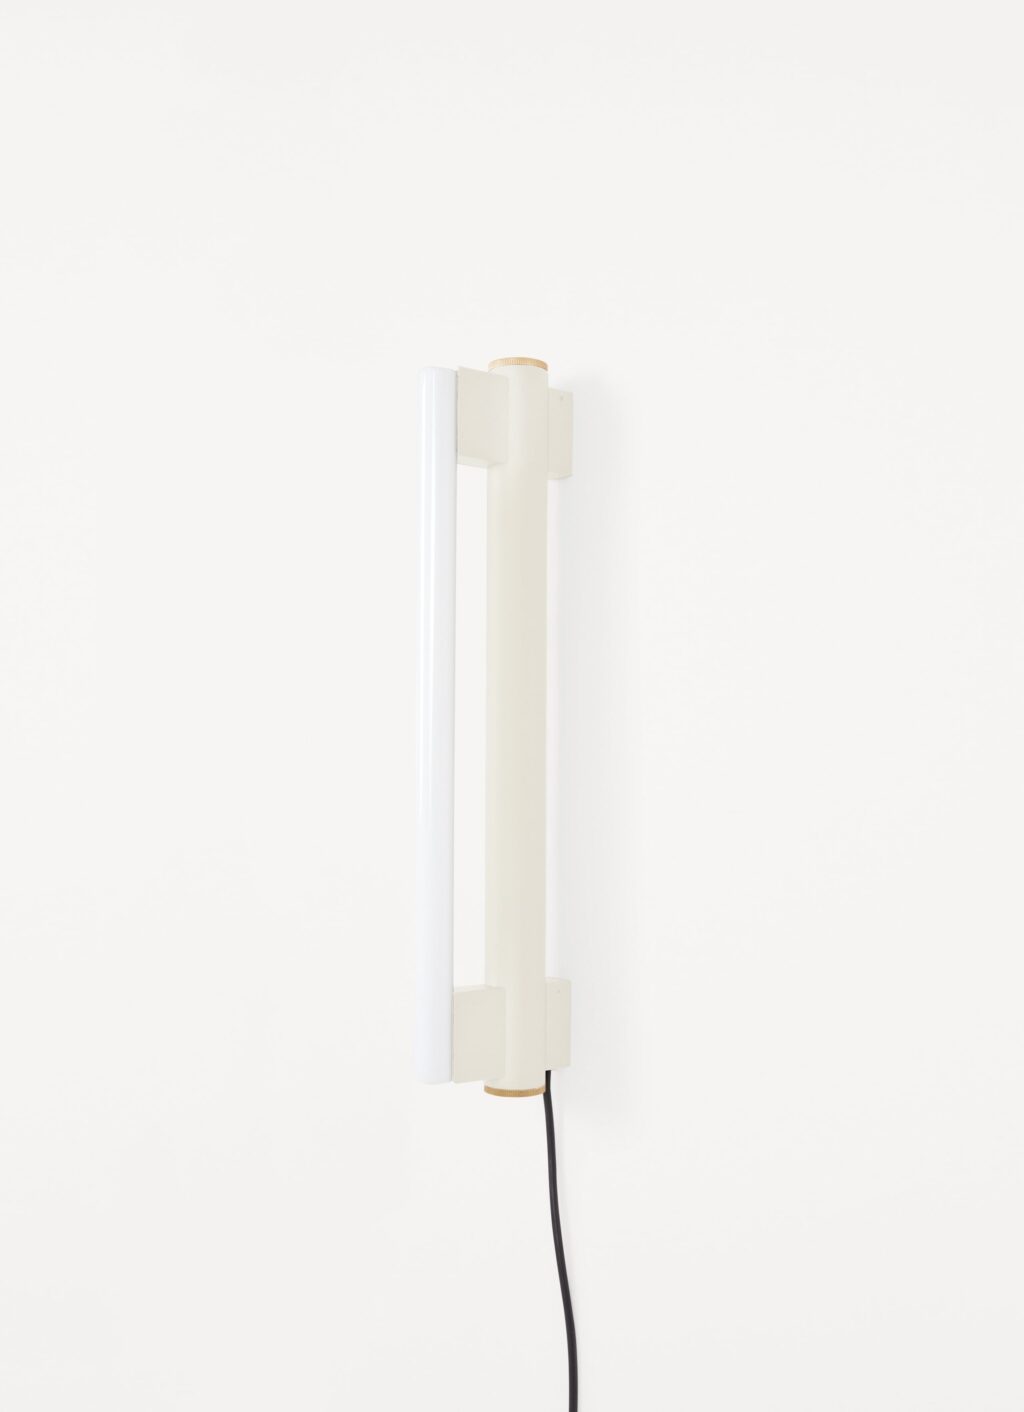 Frama - Eiffel Wall Lamp - Cream - Single 500